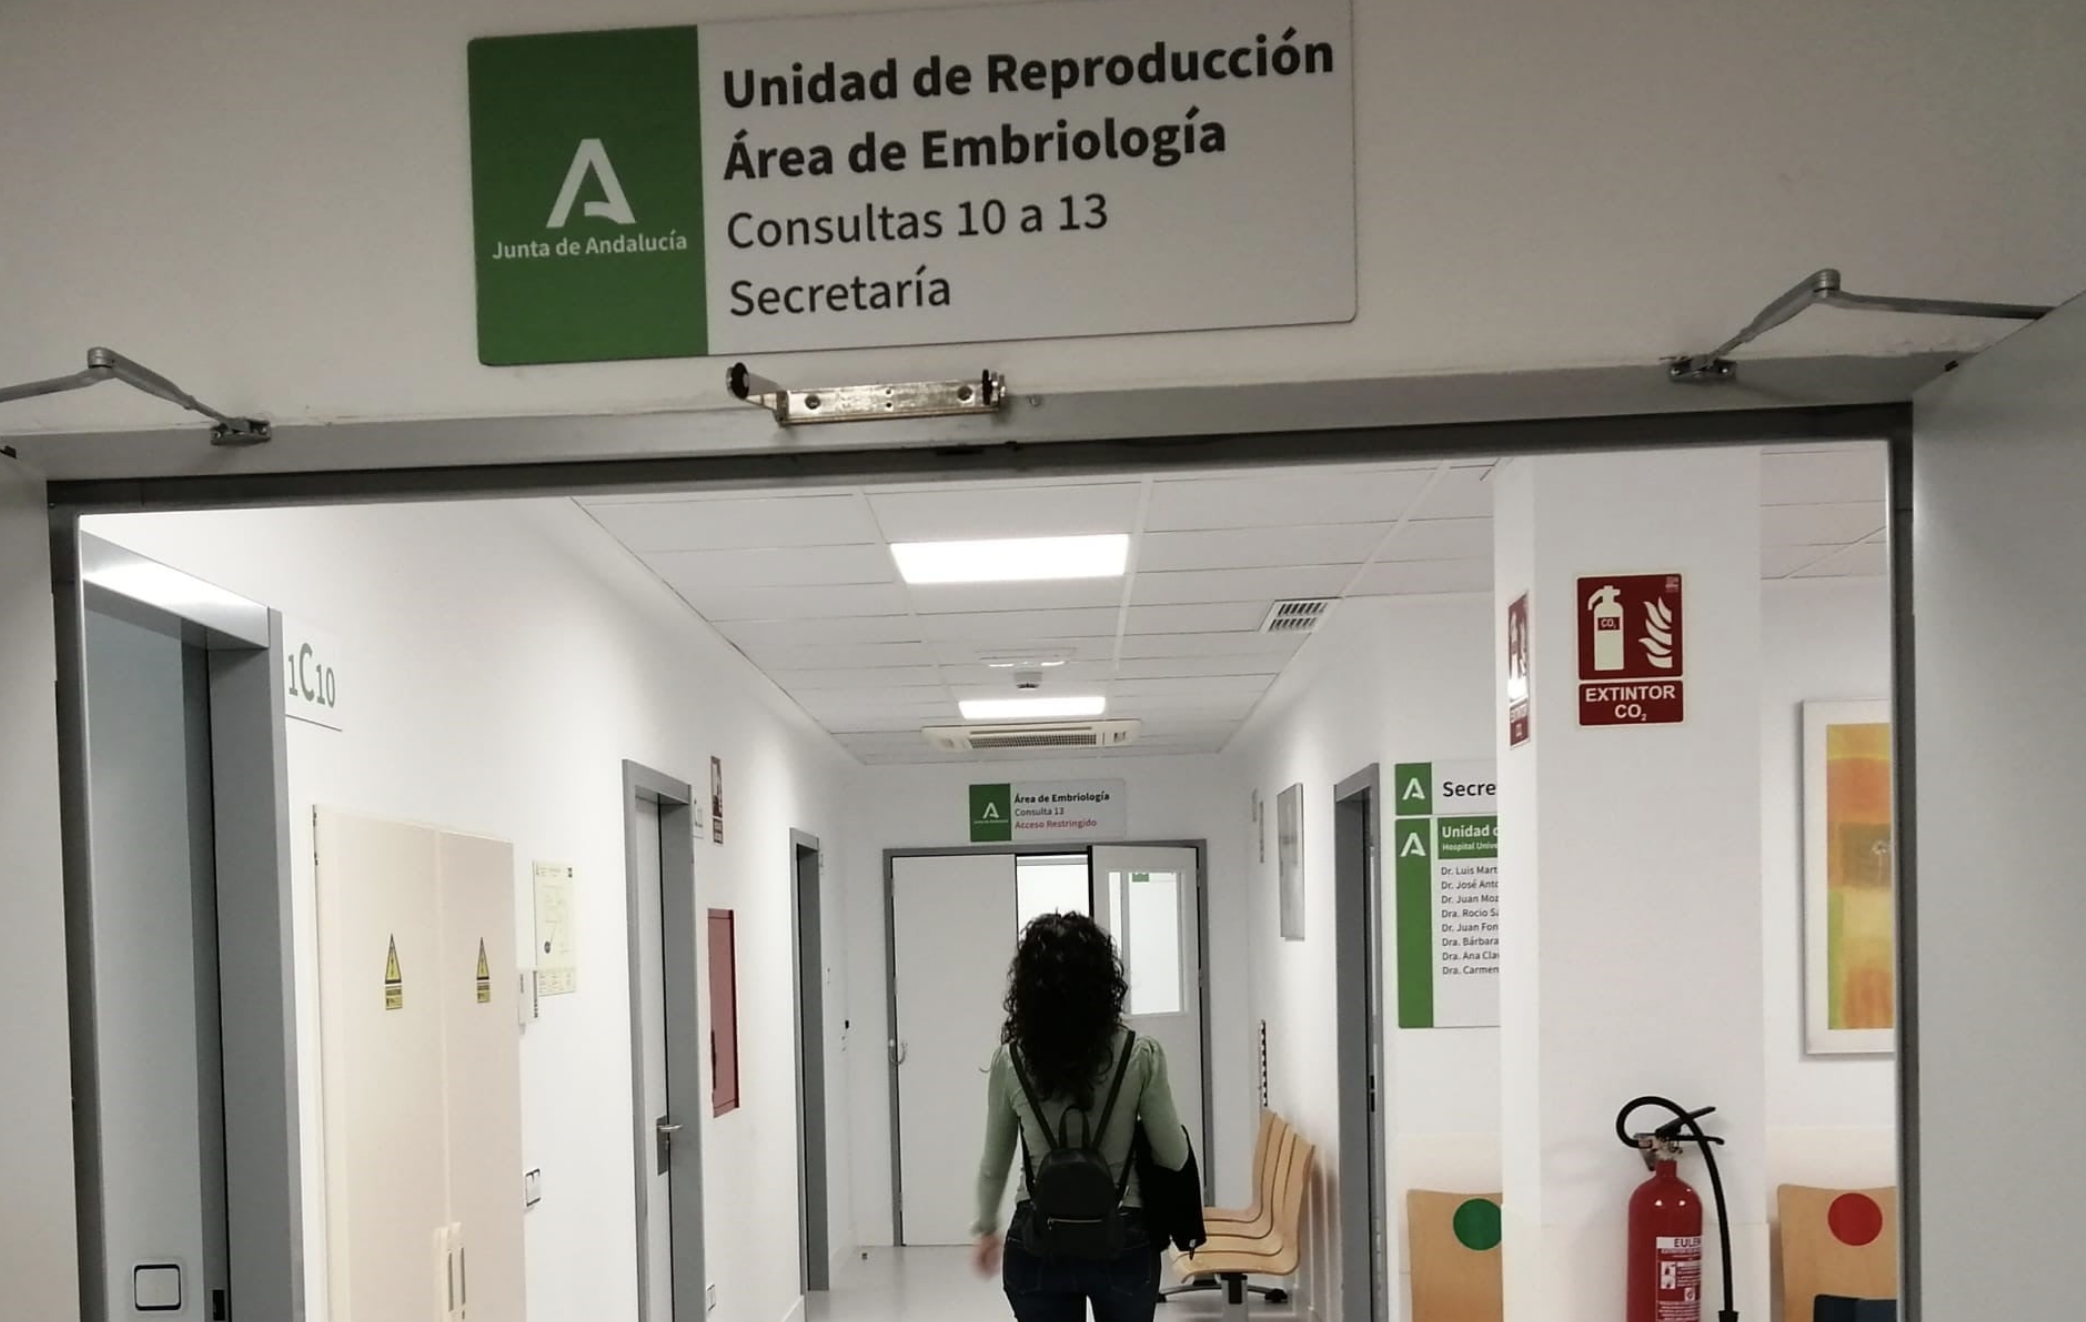 El "imperdonable" error en una fecundación 'in vitro' en Cádiz. Unidad de reproducción en un hospital público andaluz, en una imagen de archivo.